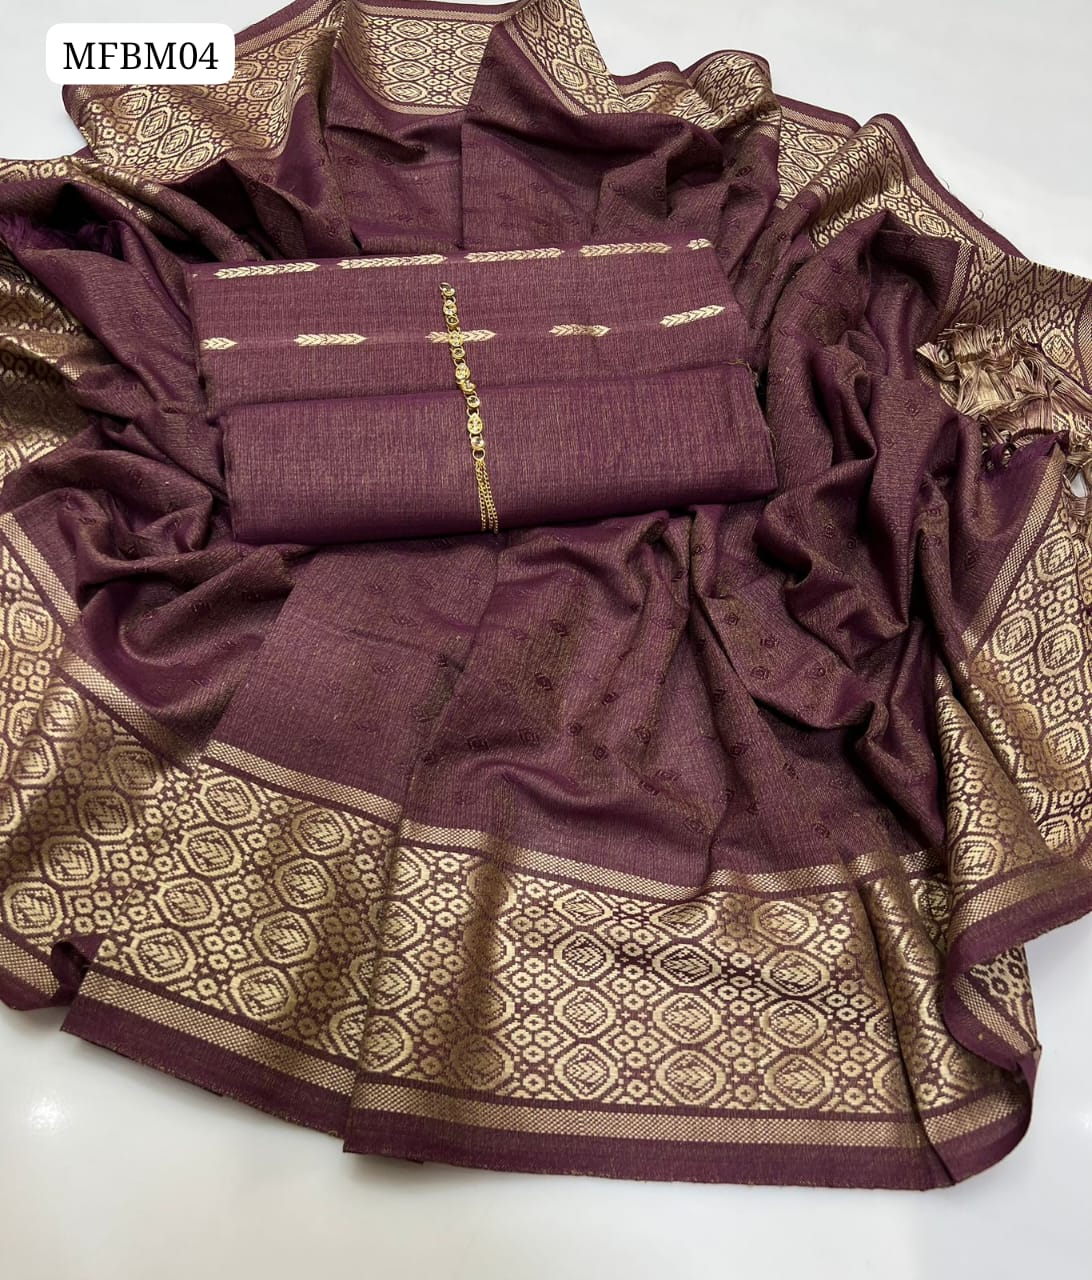 Shamray Marina Fabric Cross Stitch Banarsi Shirt With Banarsi Shawl And plan Trouser 3Pc Dress